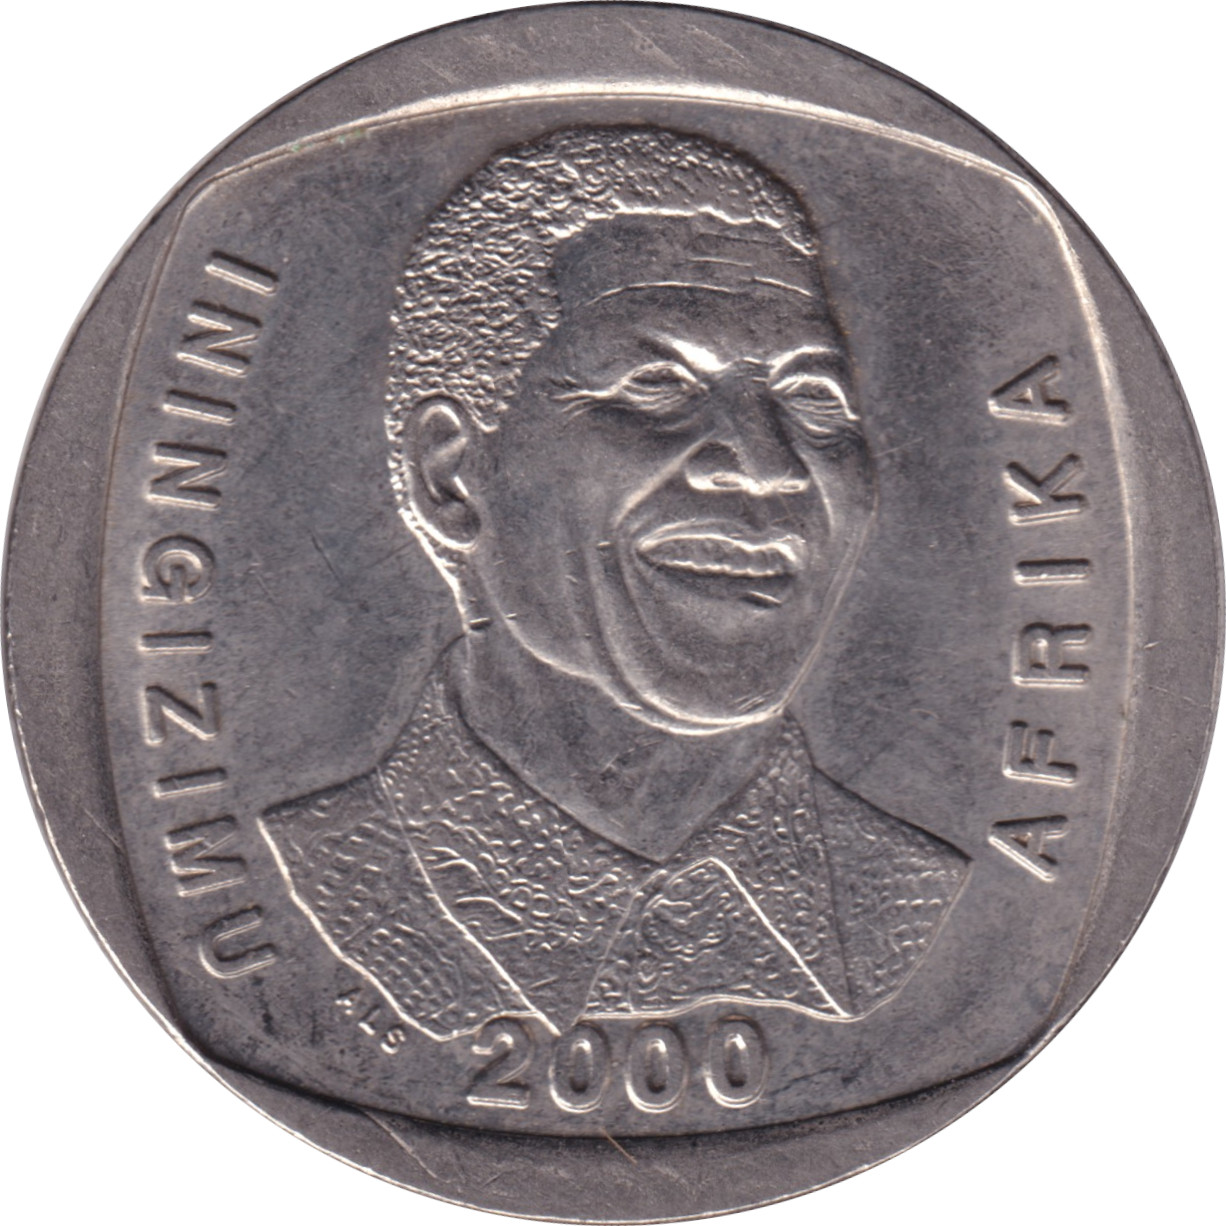 5 rand - Nelson Mandela - Cuivre nickelé